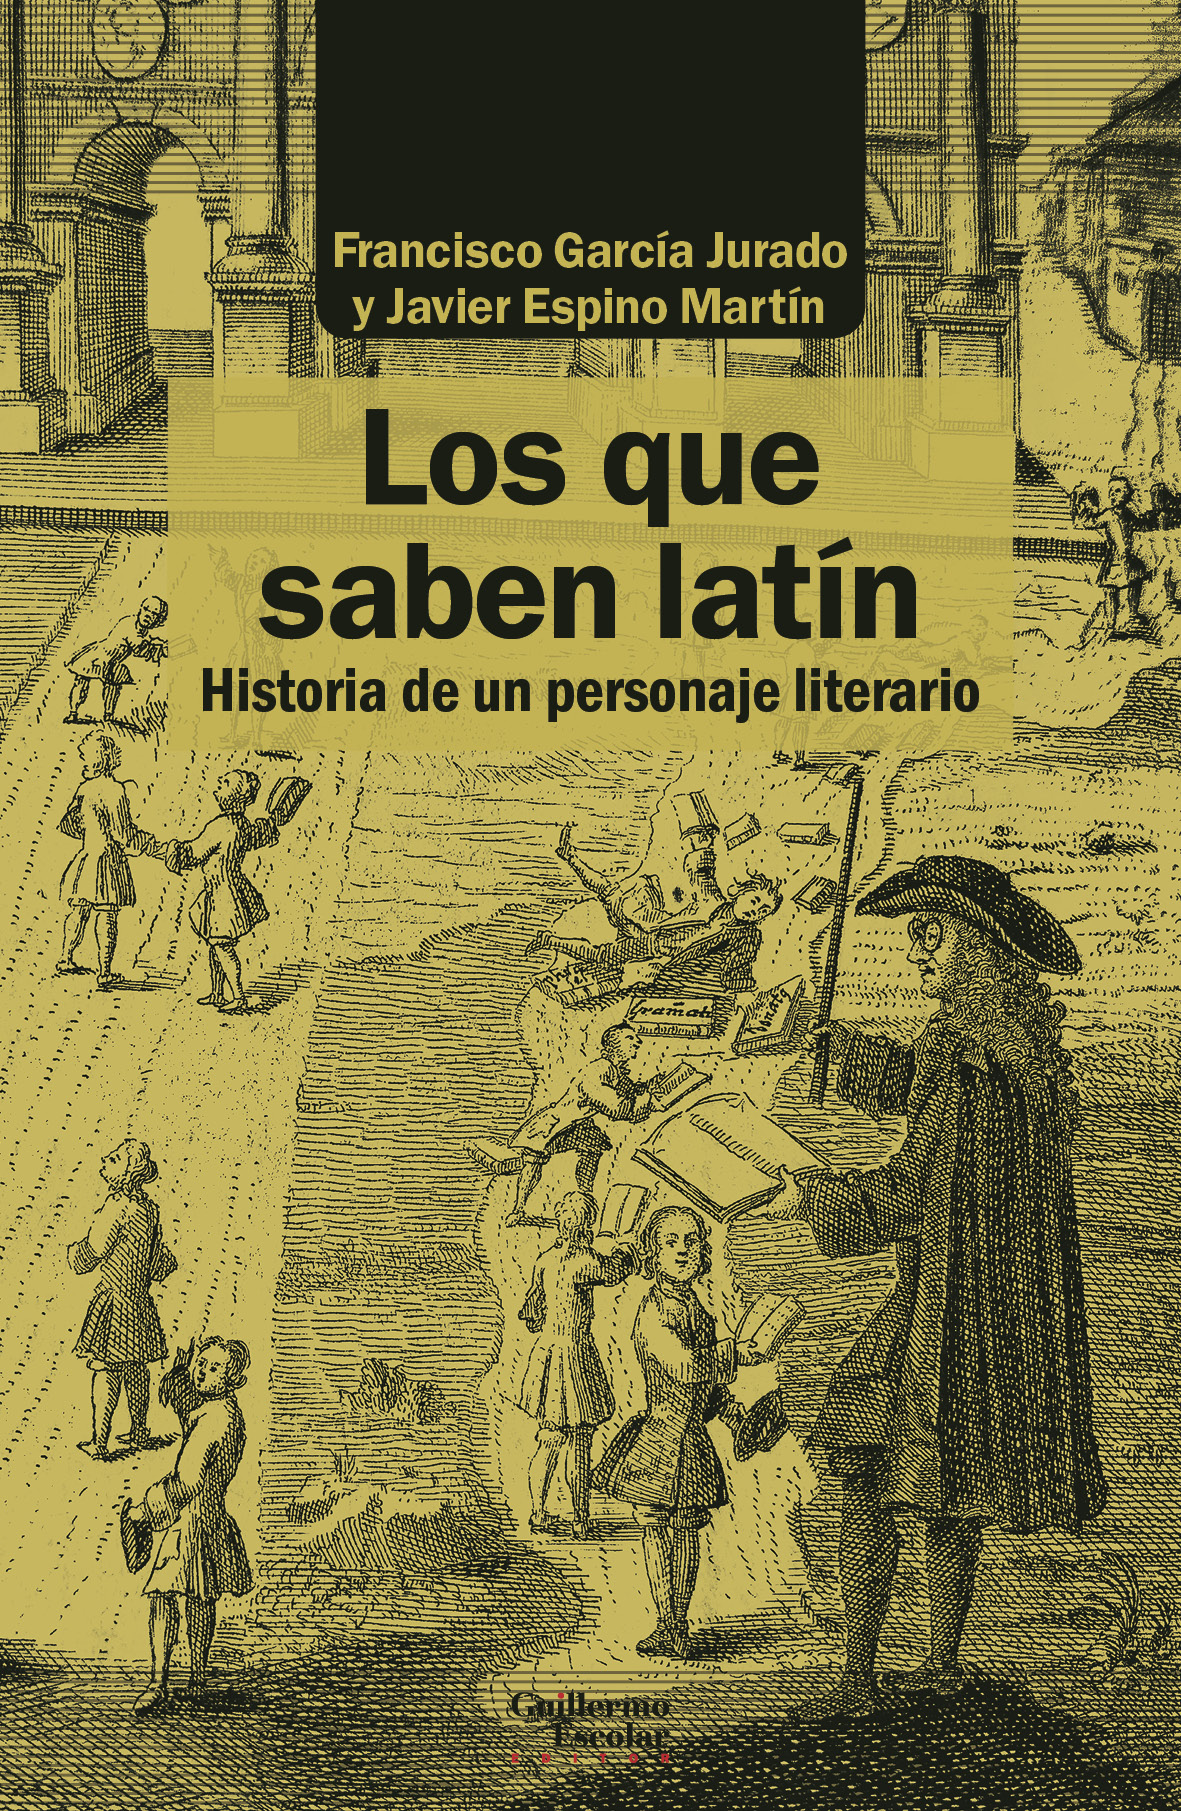 Profesores de latín